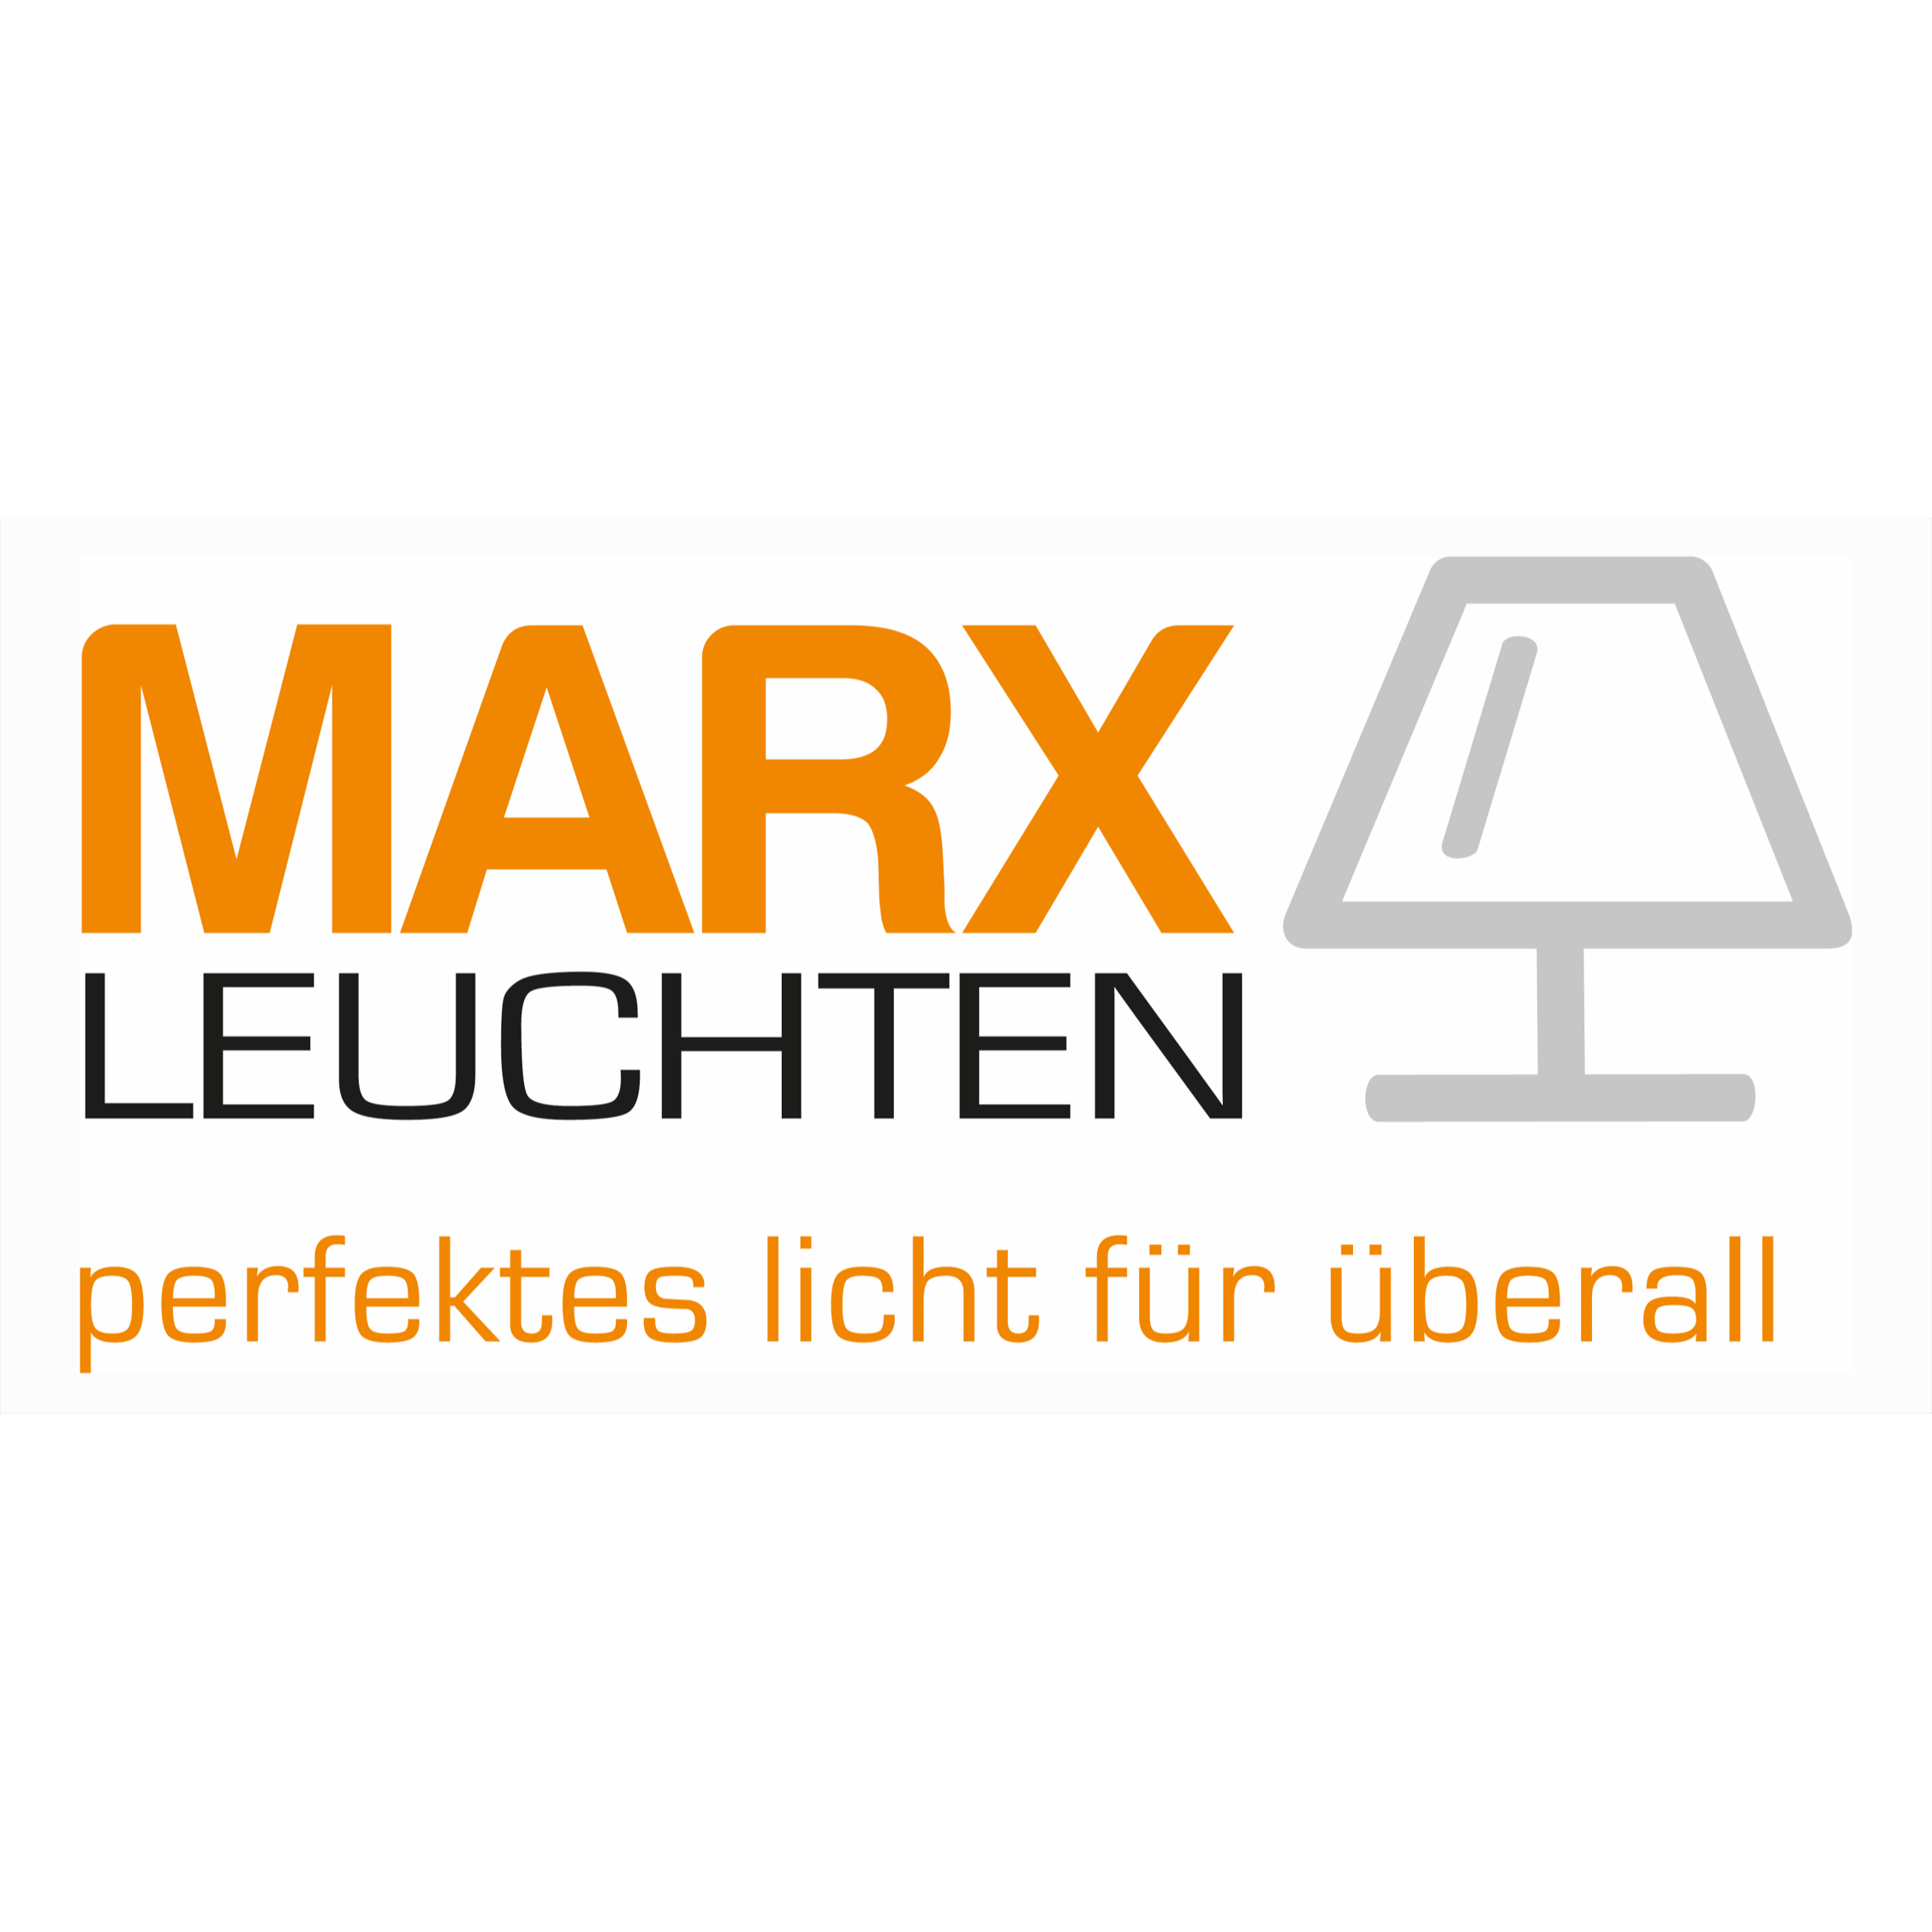 Marx Leuchten Logo